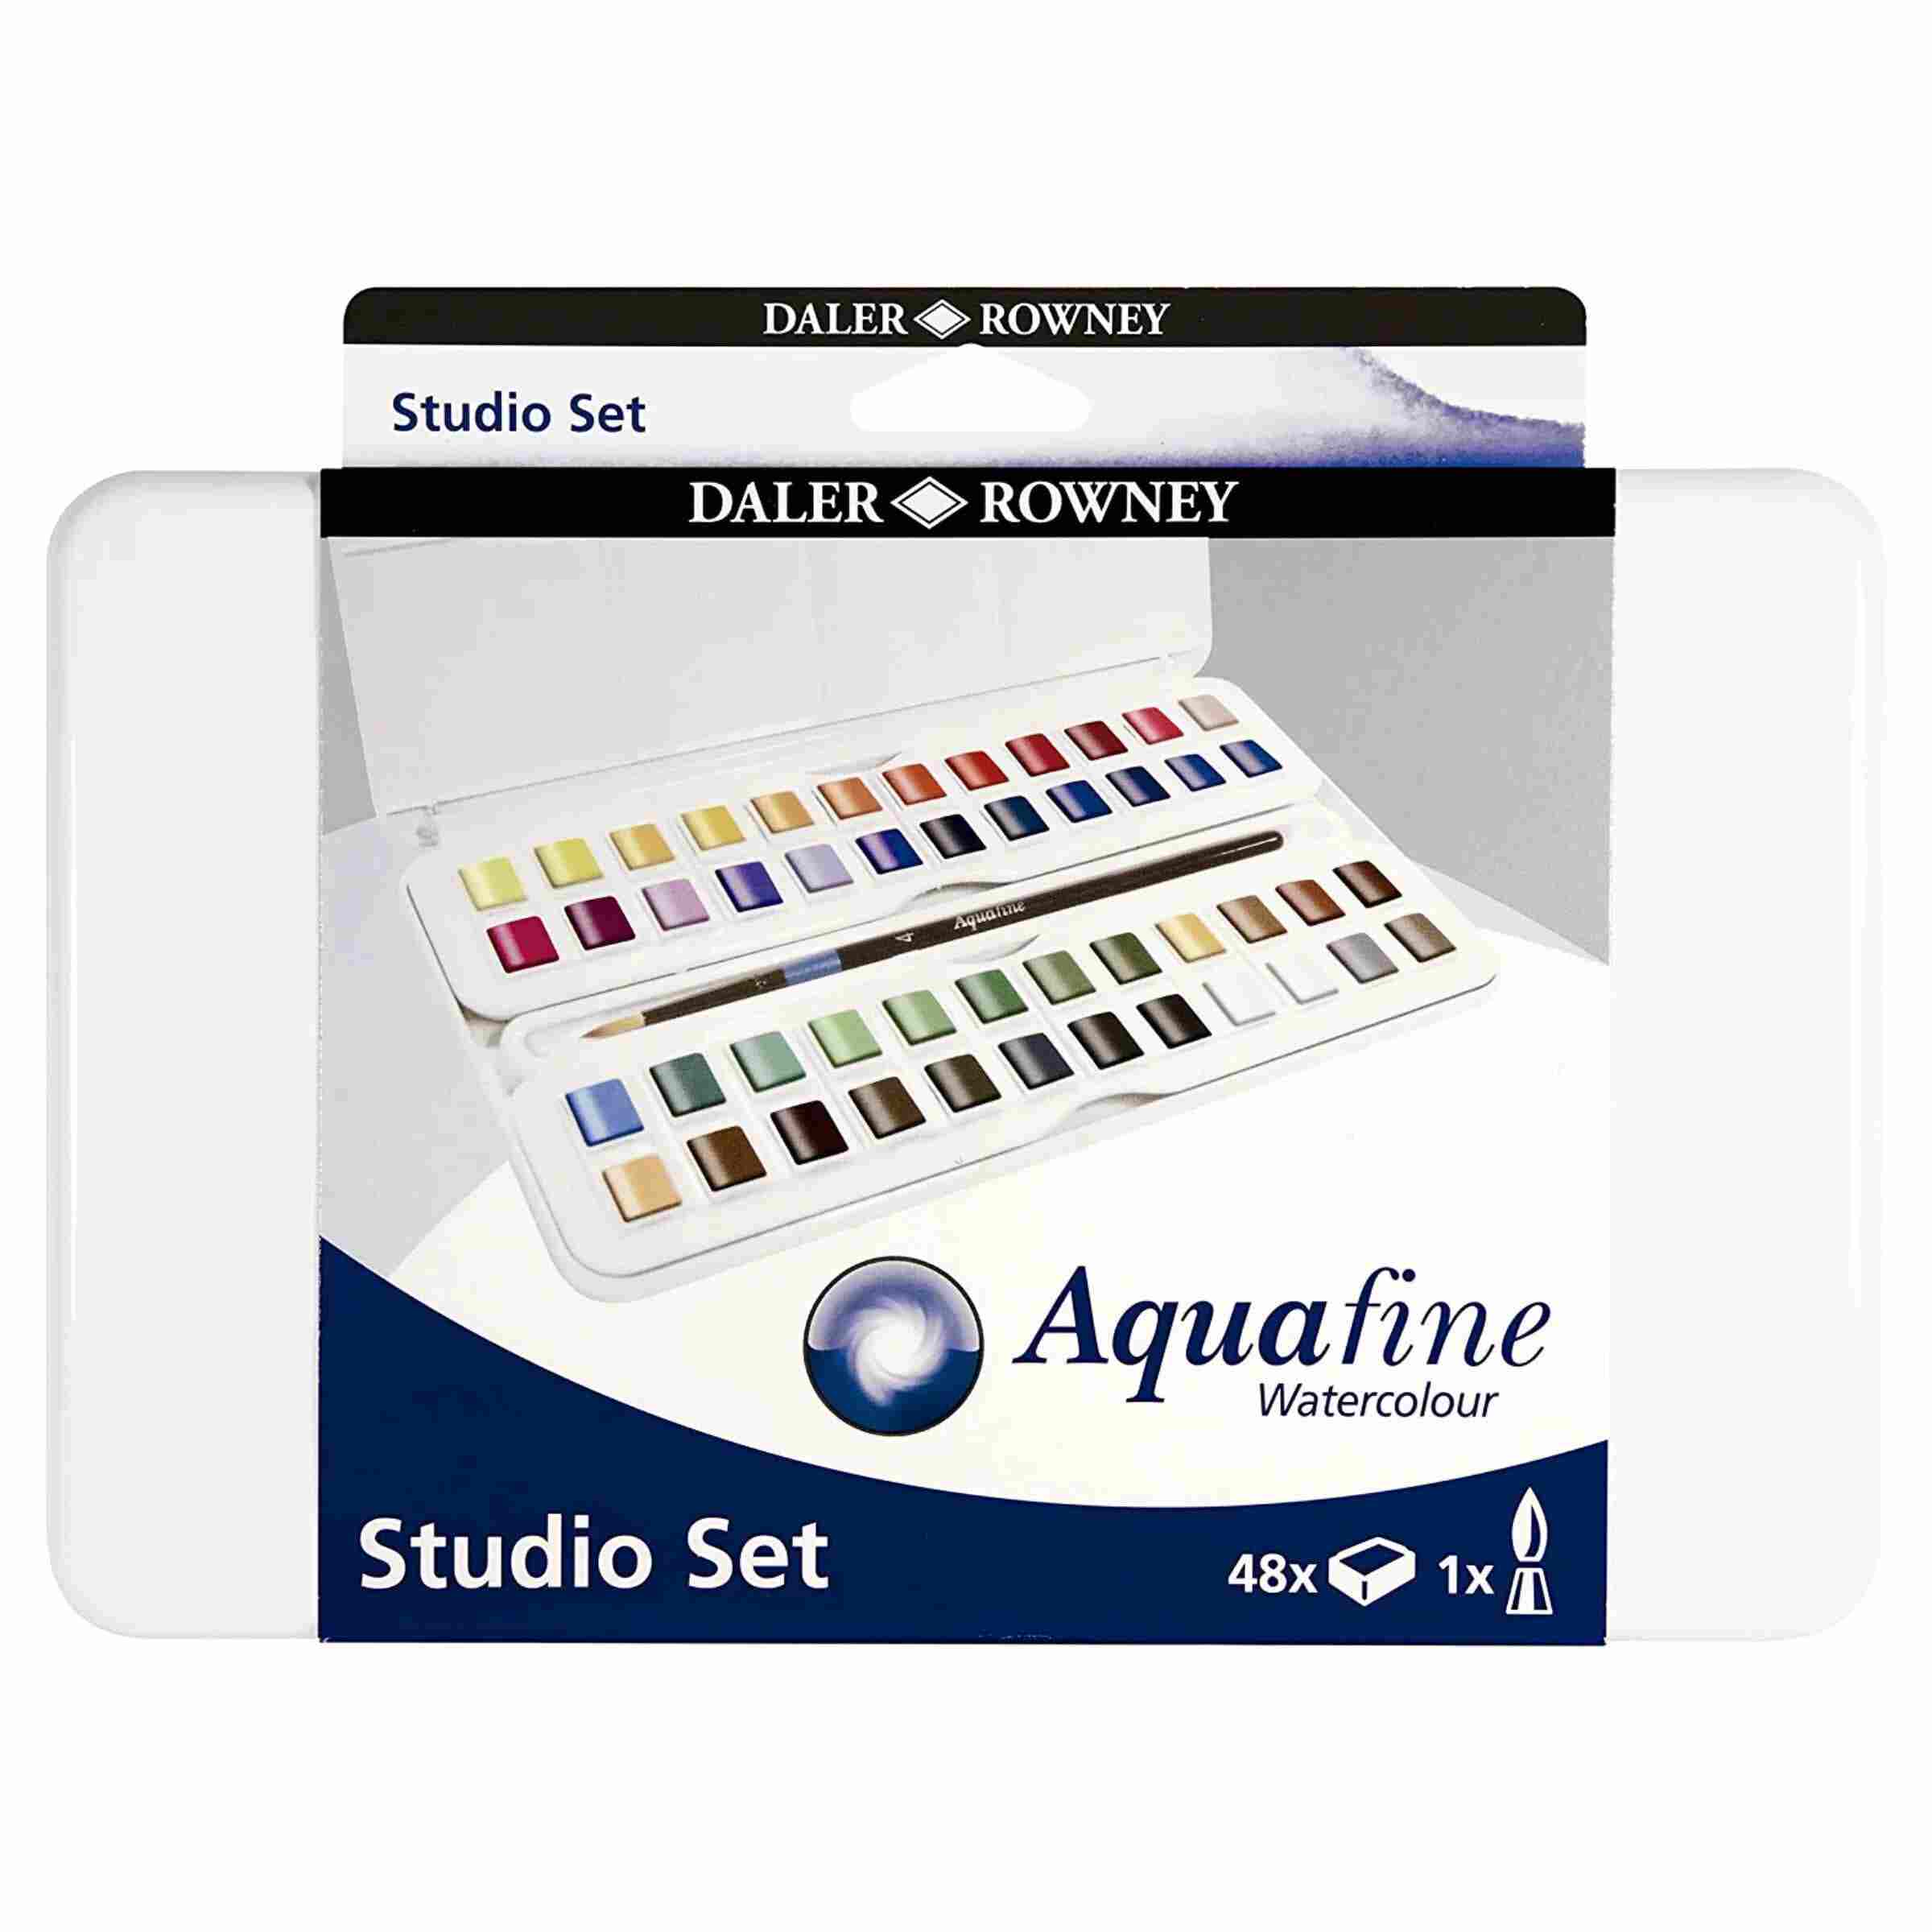 Daler Rowney Aquafine 48 Half Pan Watercolor Studio Set